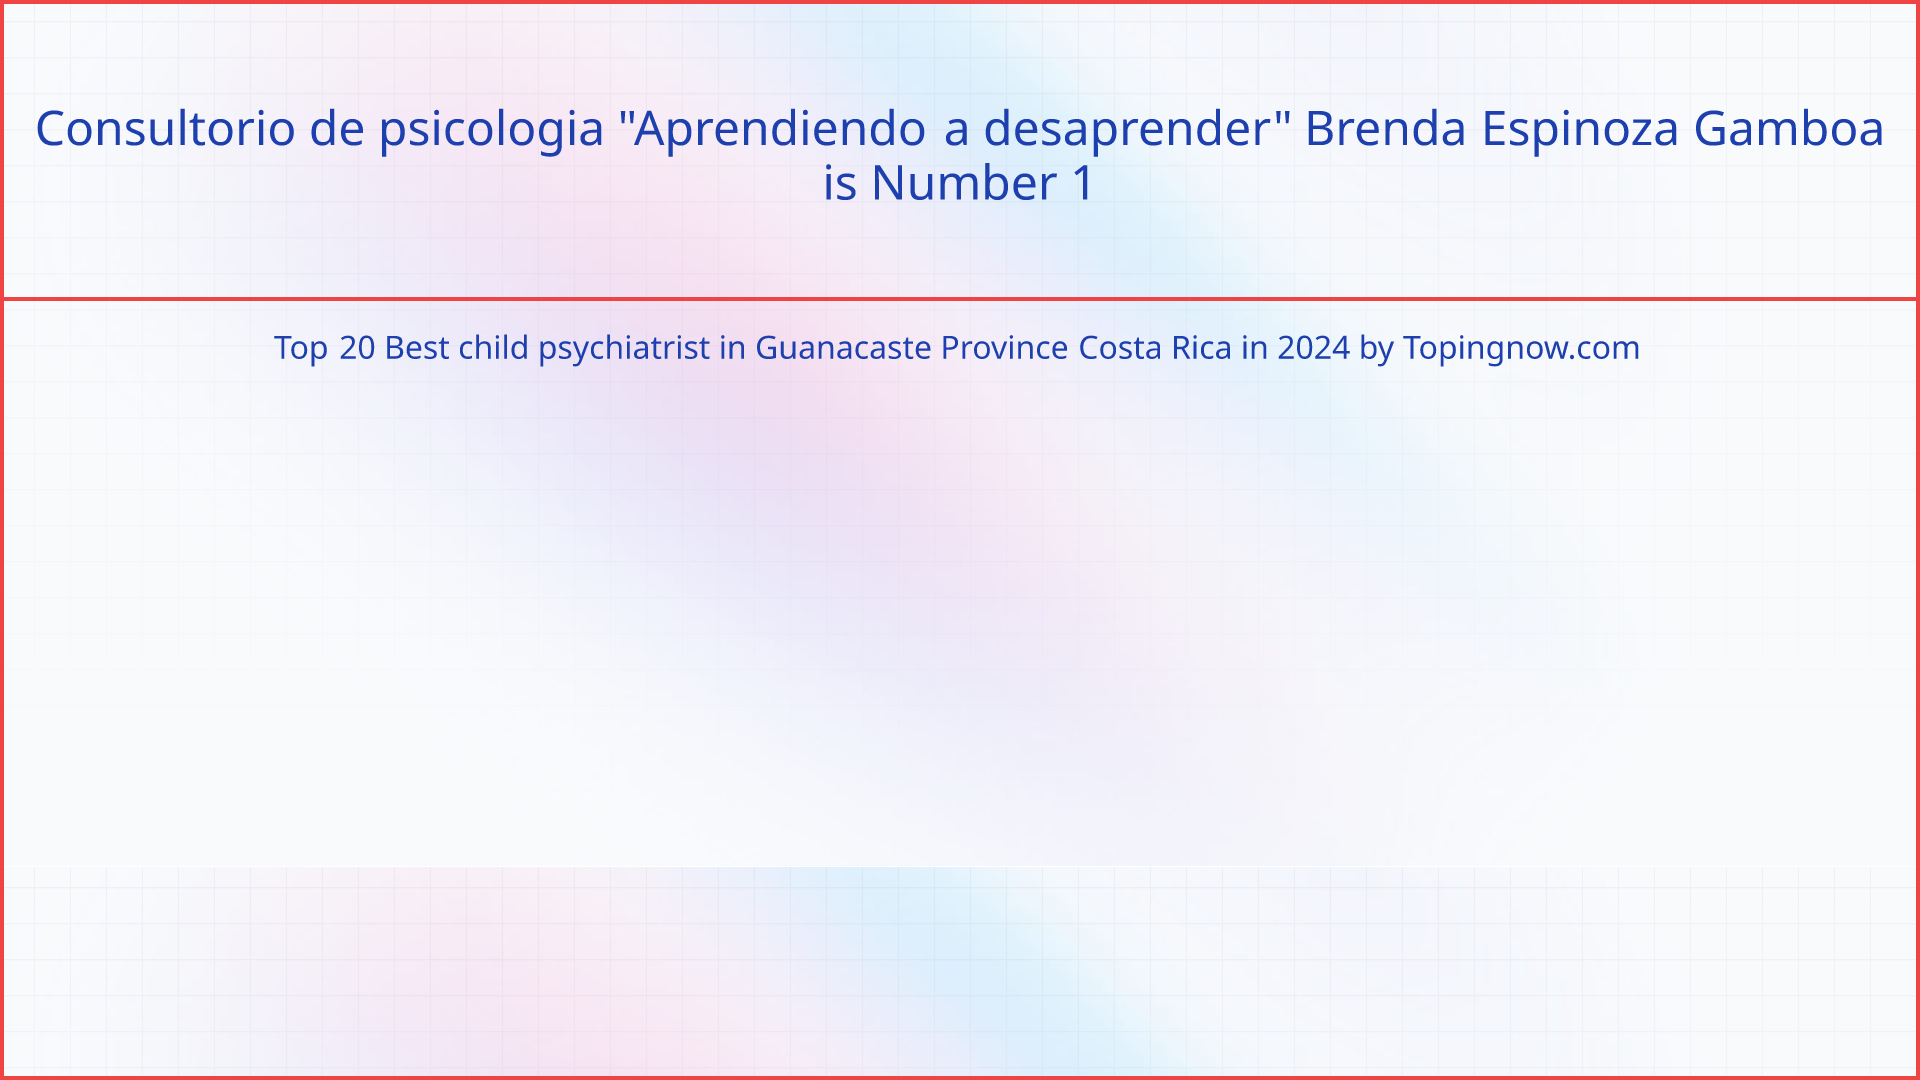 Consultorio de psicologia "Aprendiendo a desaprender" Brenda Espinoza Gamboa: Top 20 Best child psychiatrist in Guanacaste Province Costa Rica in 2024